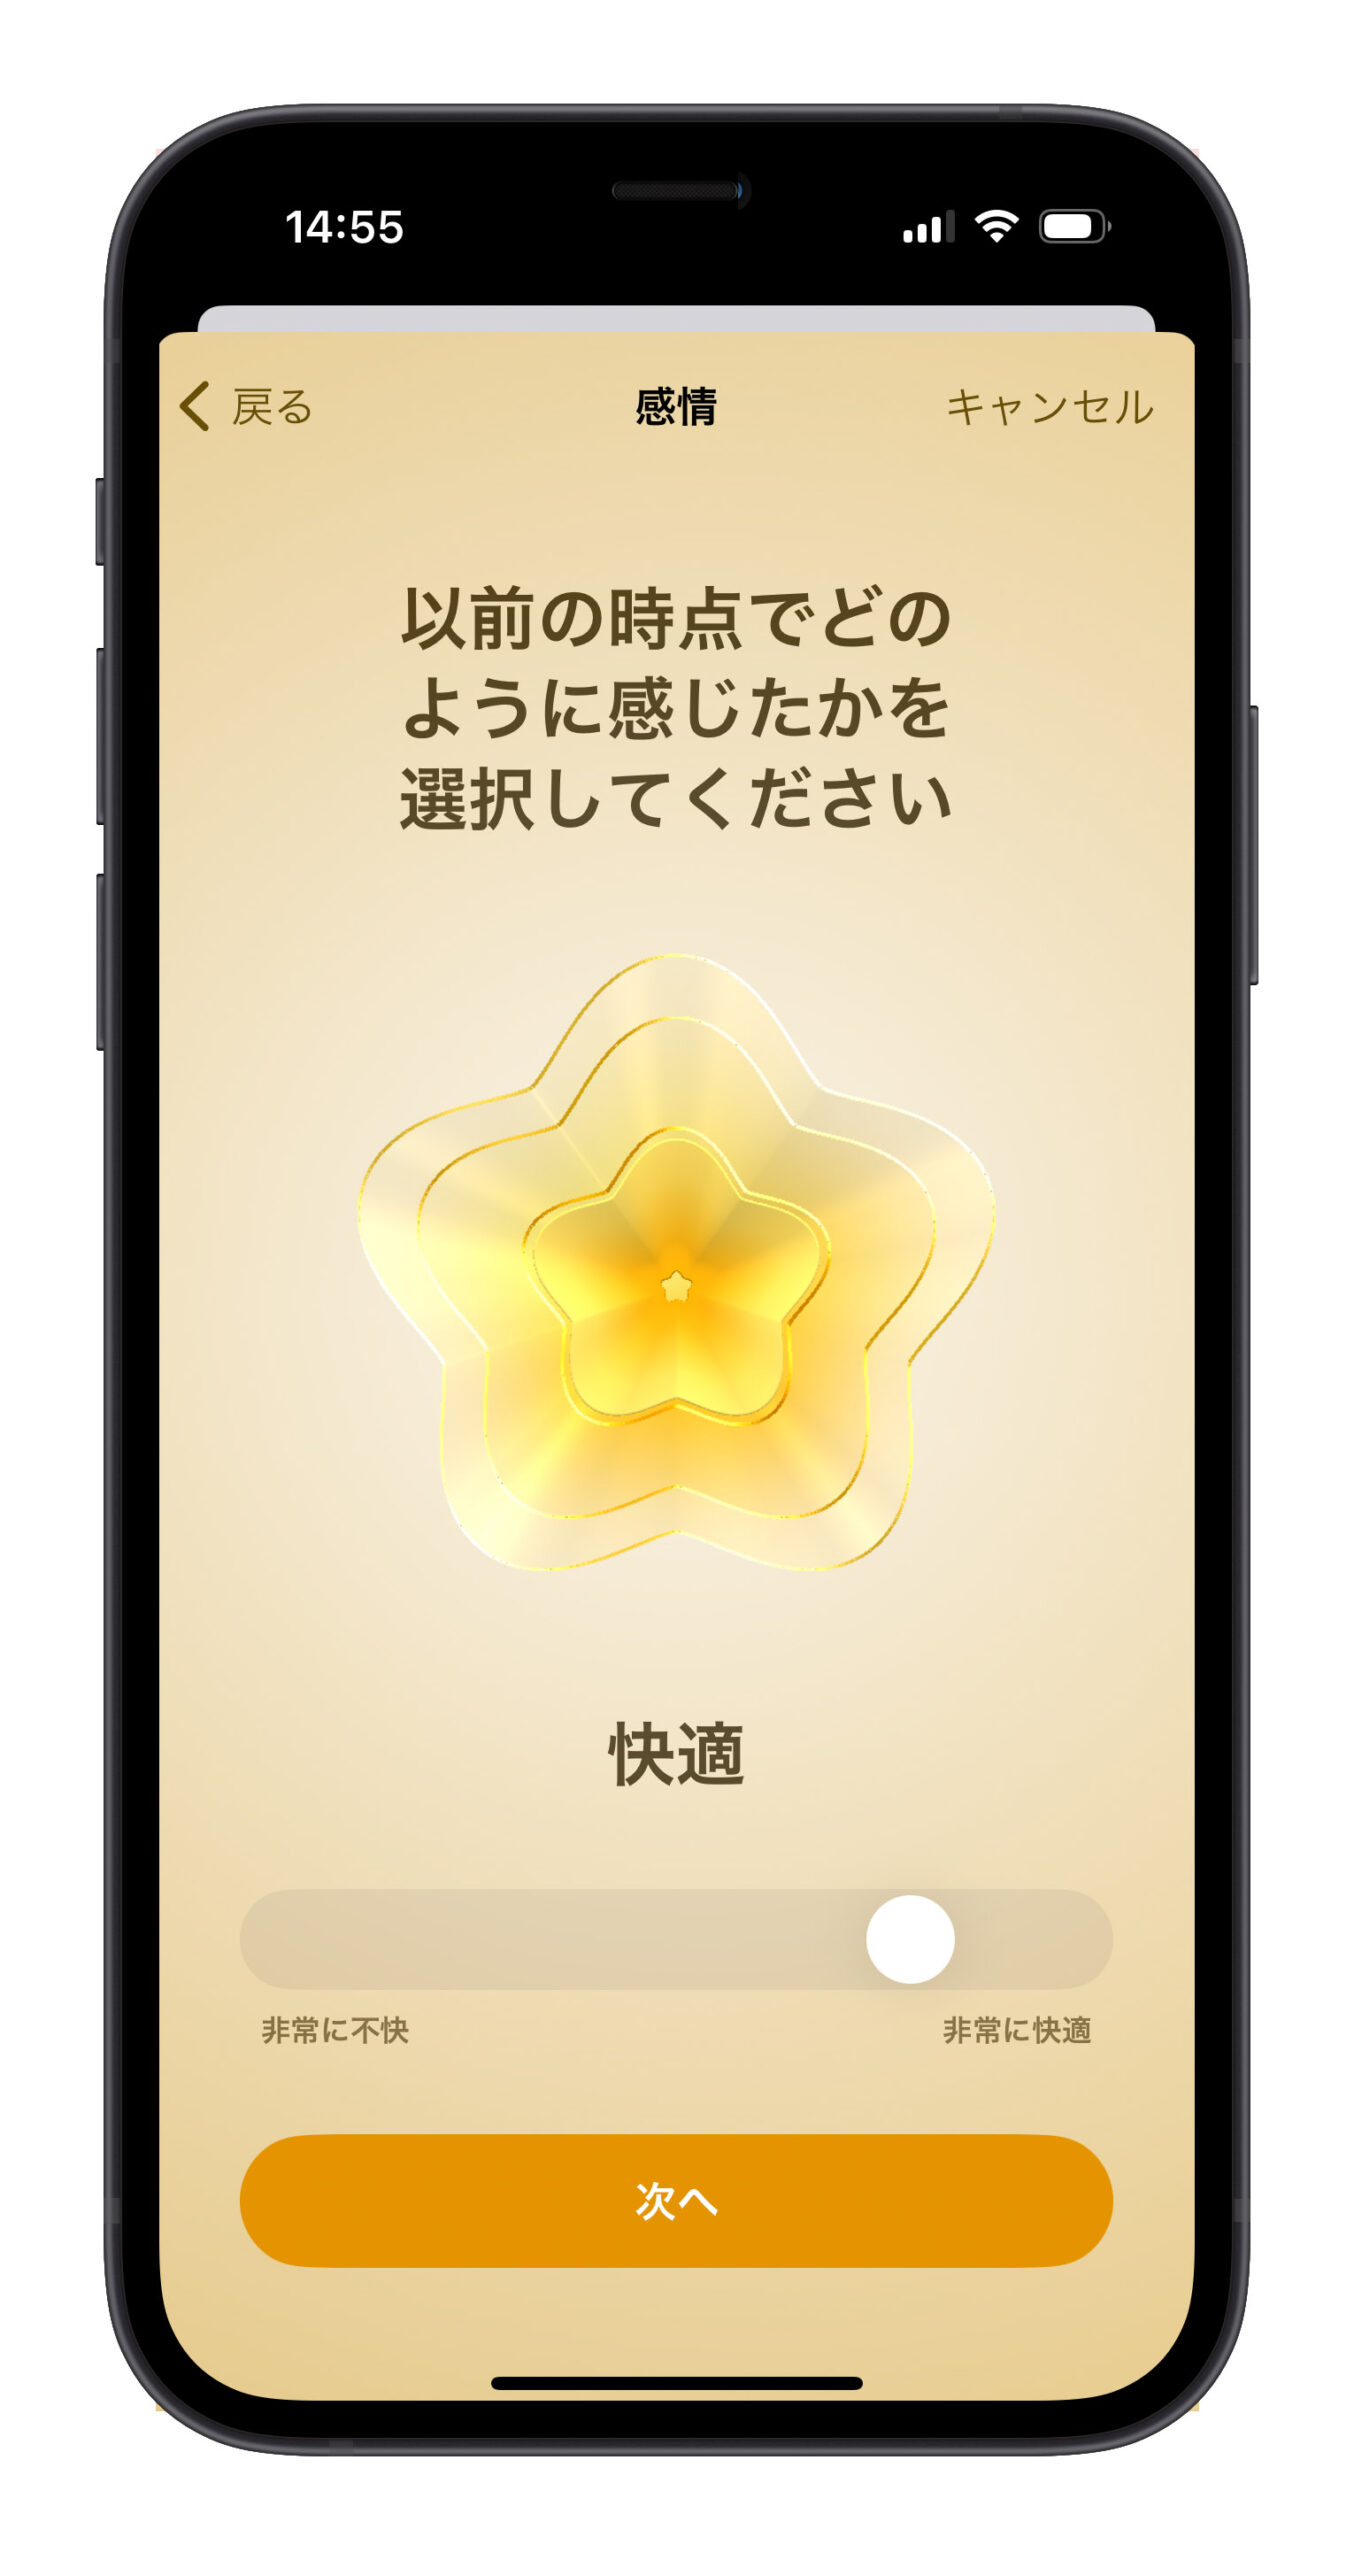 iOS 17 ヘルスケアアプリ 感情 気分 記録